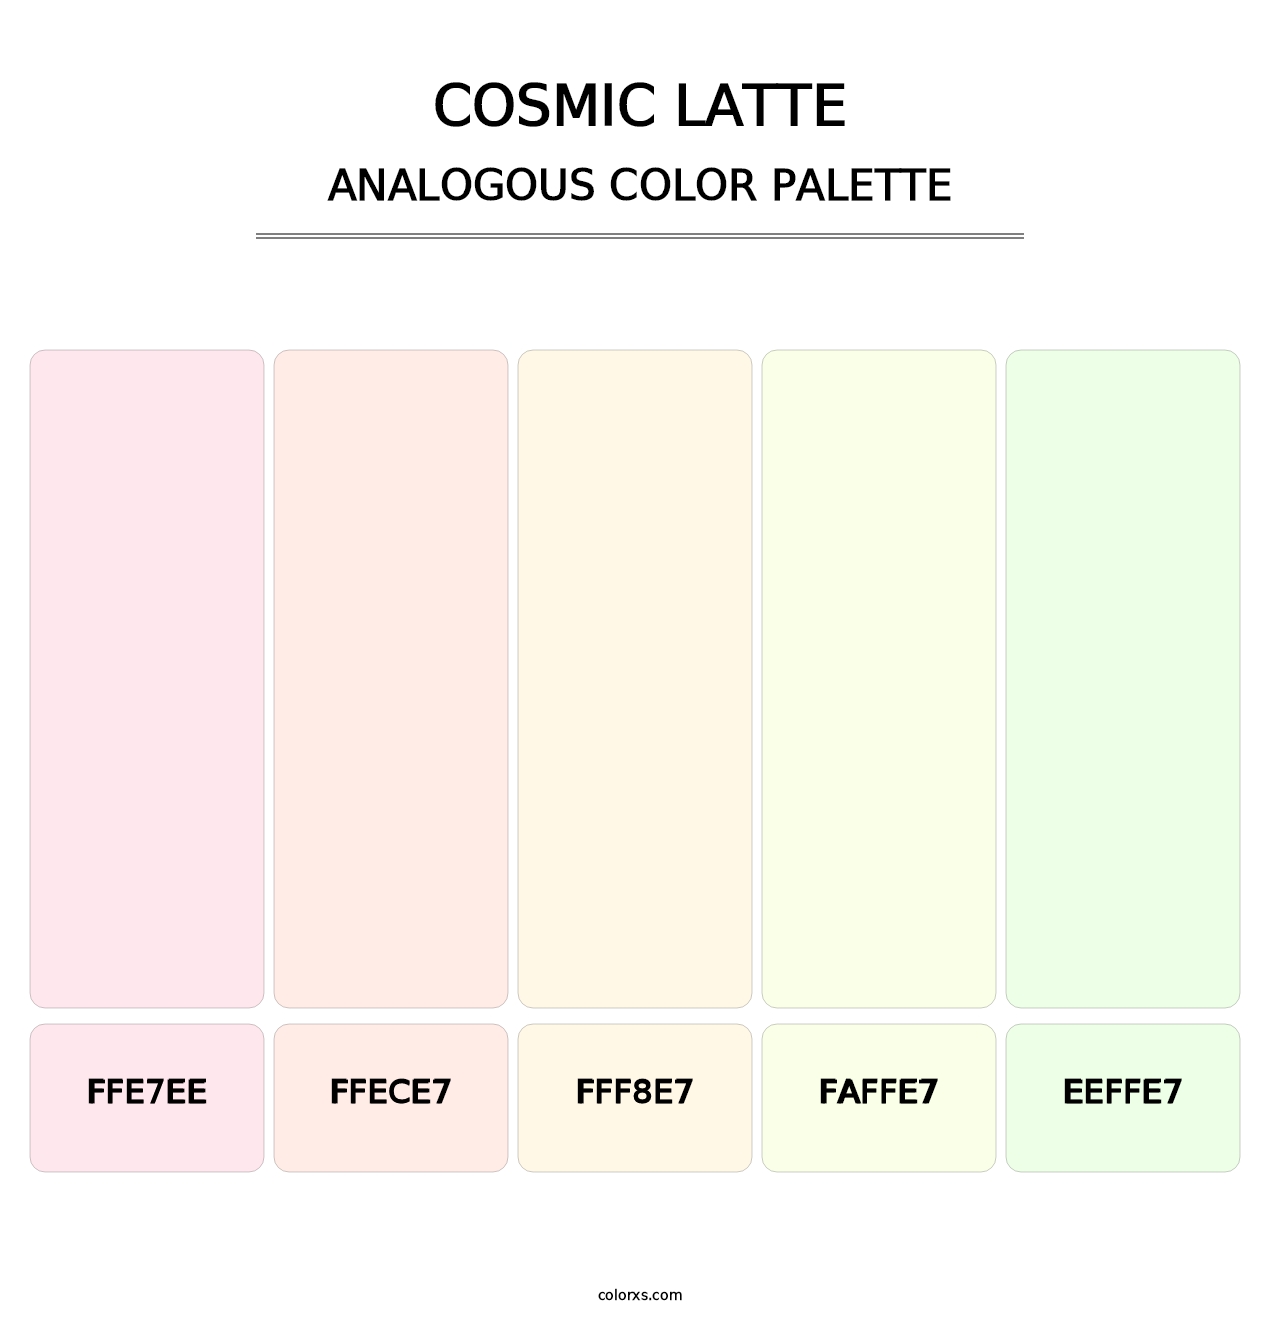 Cosmic Latte - Analogous Color Palette